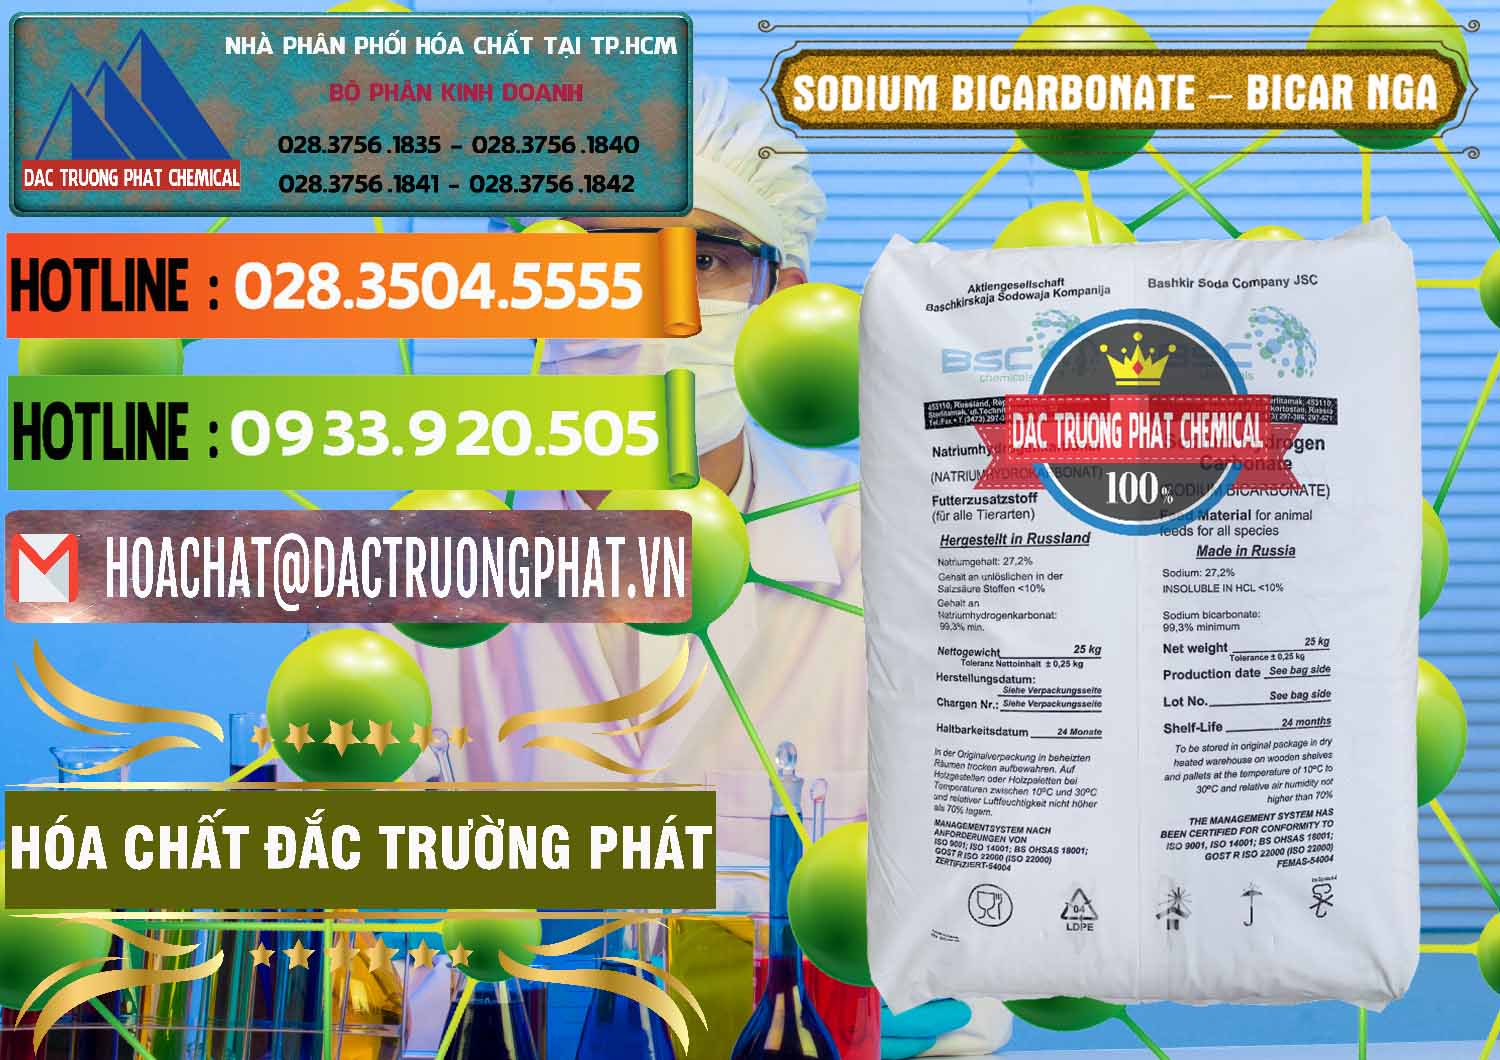 Nơi chuyên kinh doanh ( bán ) Sodium Bicarbonate – Bicar NaHCO3 Nga Russia - 0425 - Cty chuyên phân phối _ nhập khẩu hóa chất tại TP.HCM - cungcaphoachat.com.vn